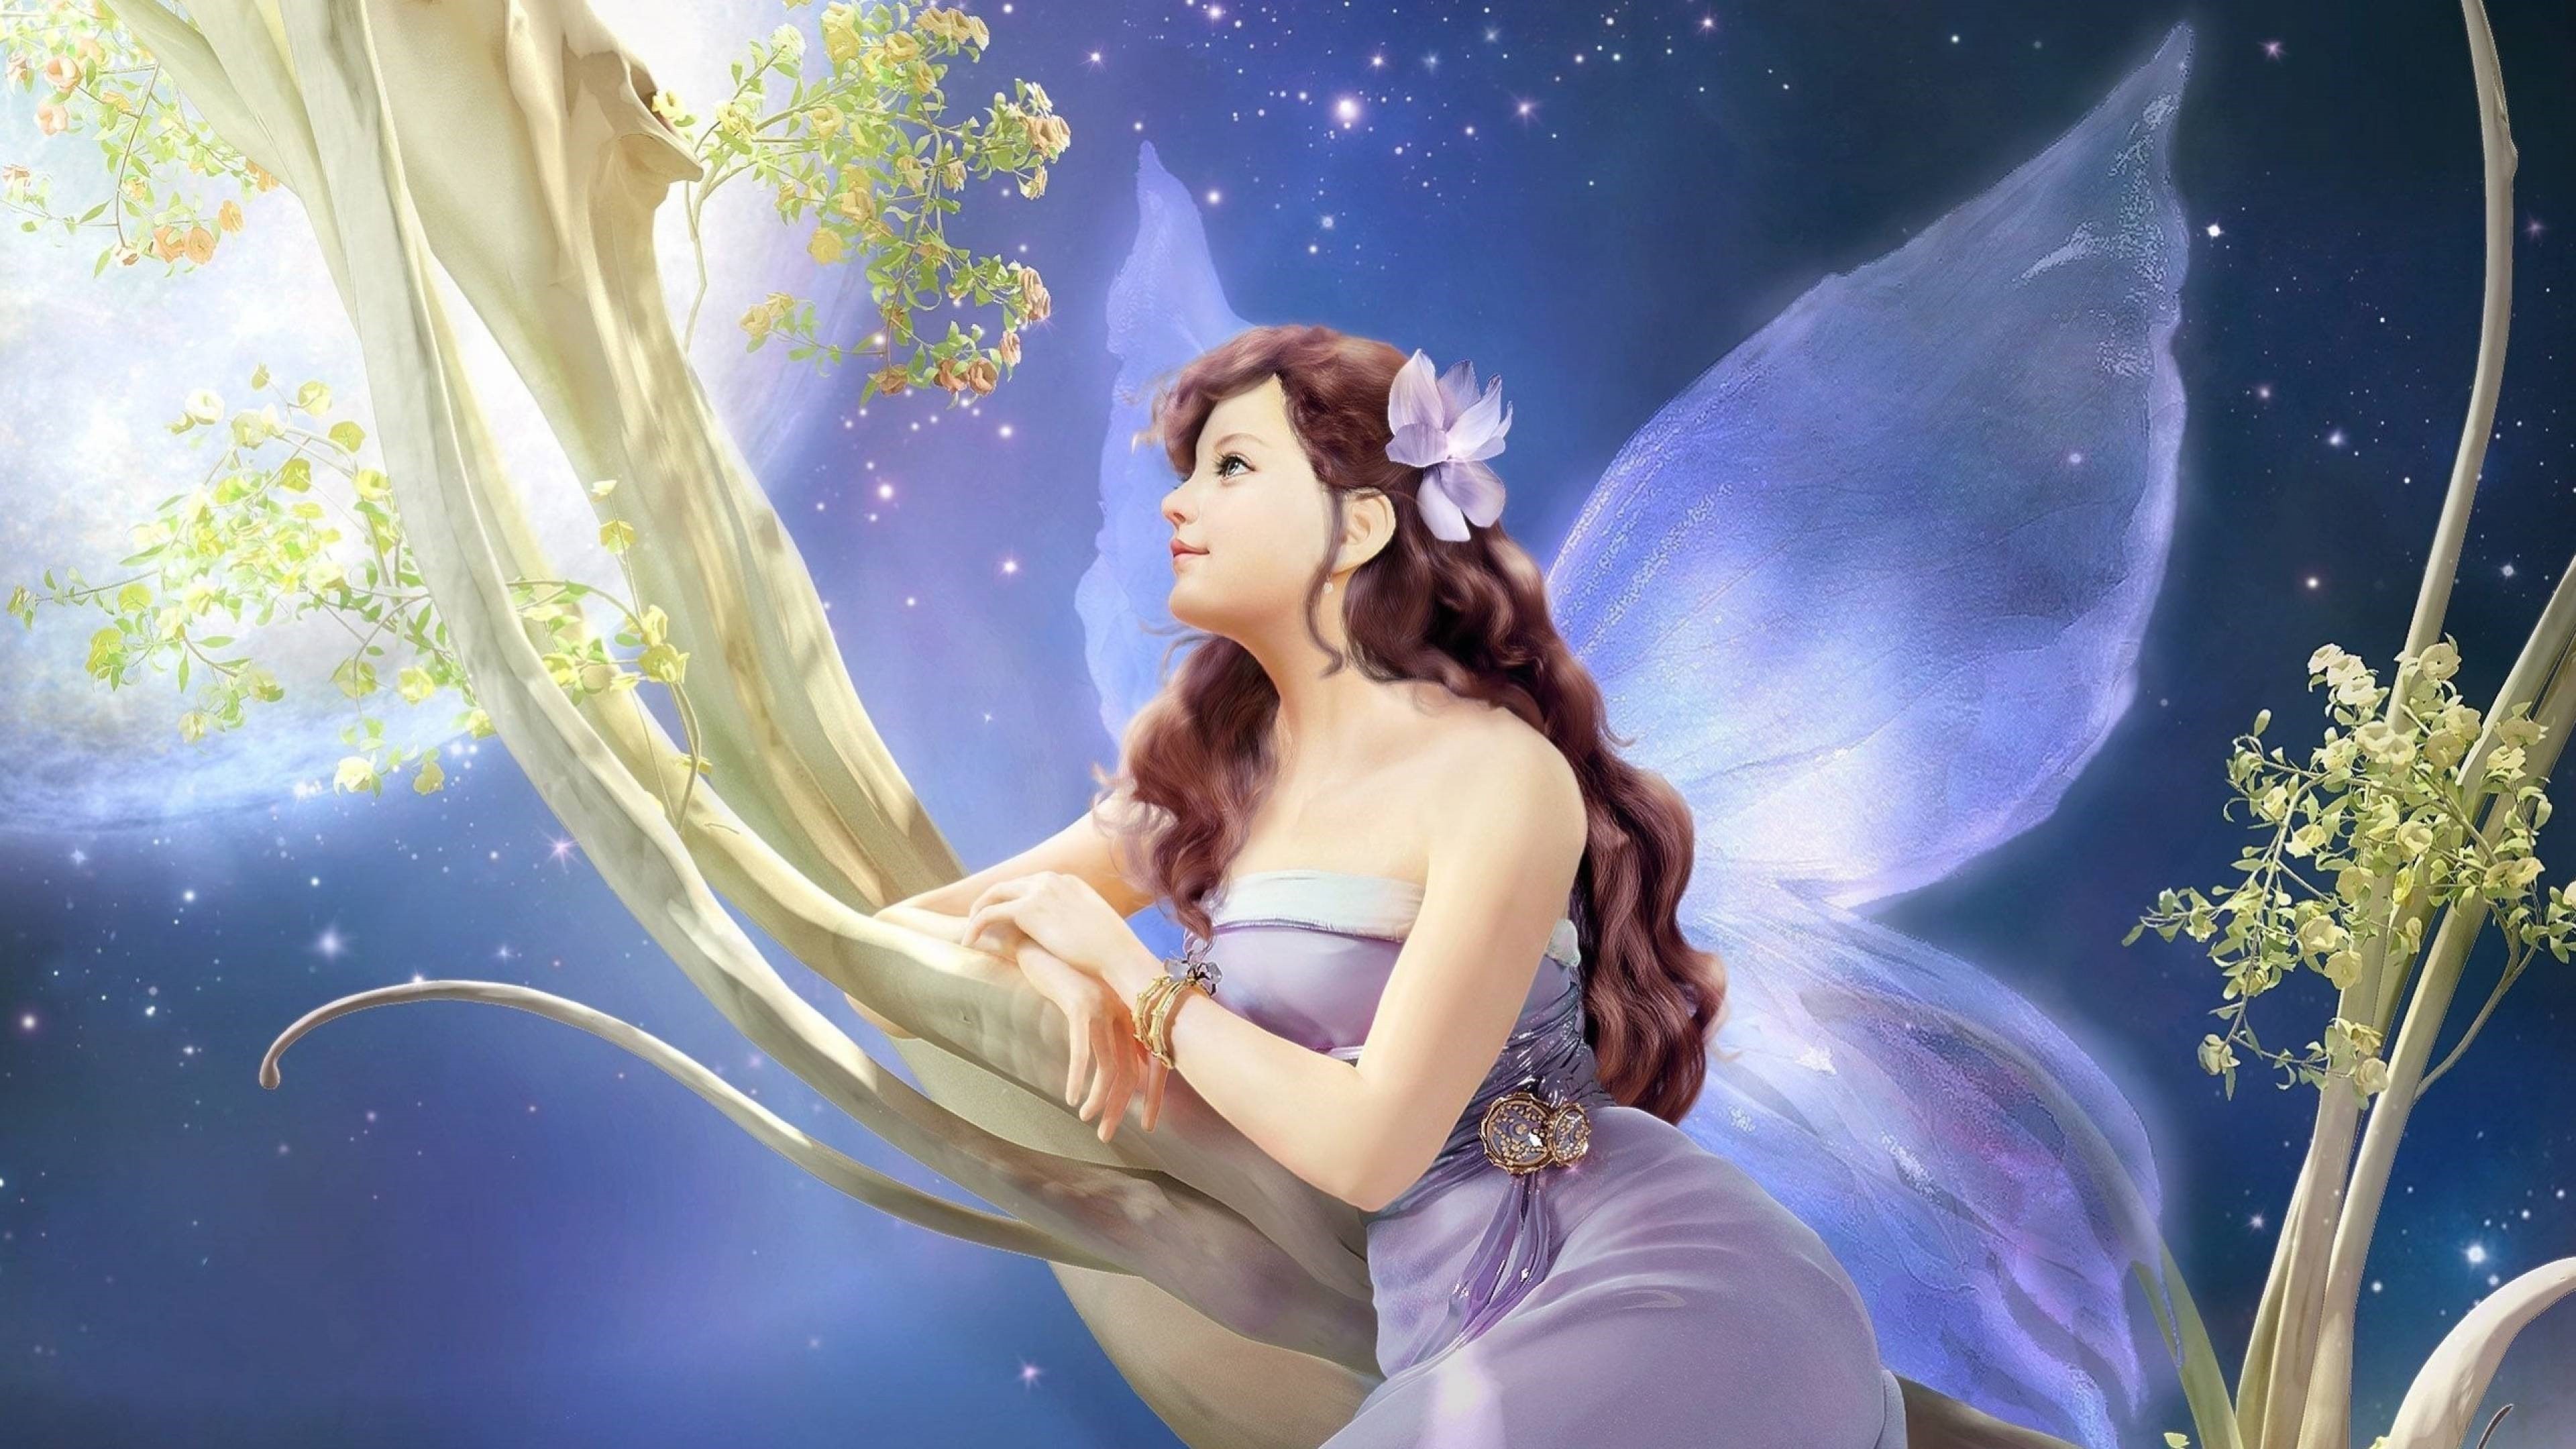 2560x1440, Fairy Wallpaper Fairy Wallpaper Fairy Wallpaper - Fairy Wallpaper Hd - HD Wallpaper 